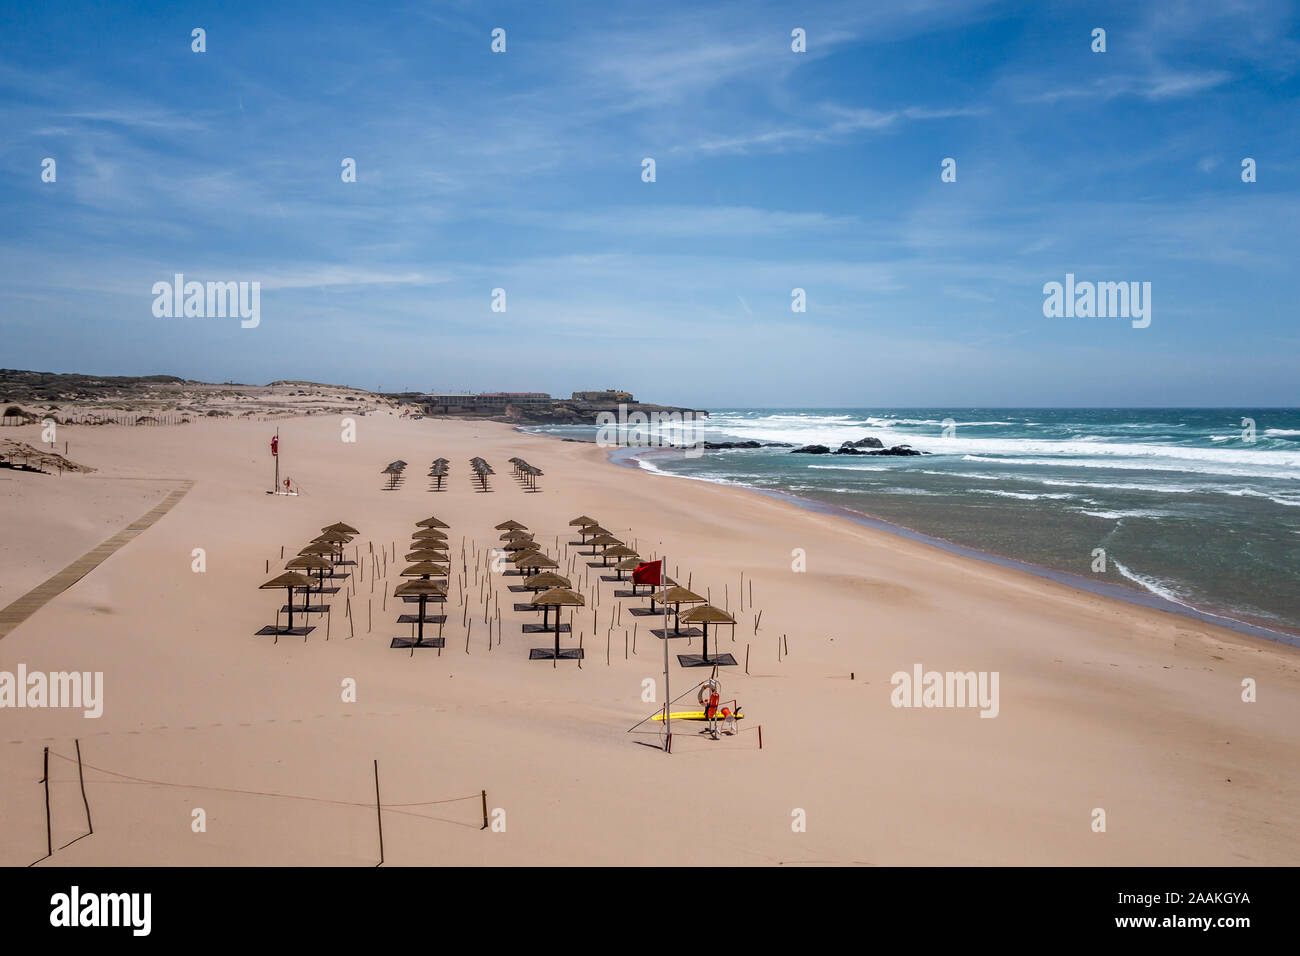 La plage de Guincho - Praia do Guincho - Cascais Portugal dans le vent sans peuple et préparé pour les personnes qui arrivent à la plage. Banque D'Images